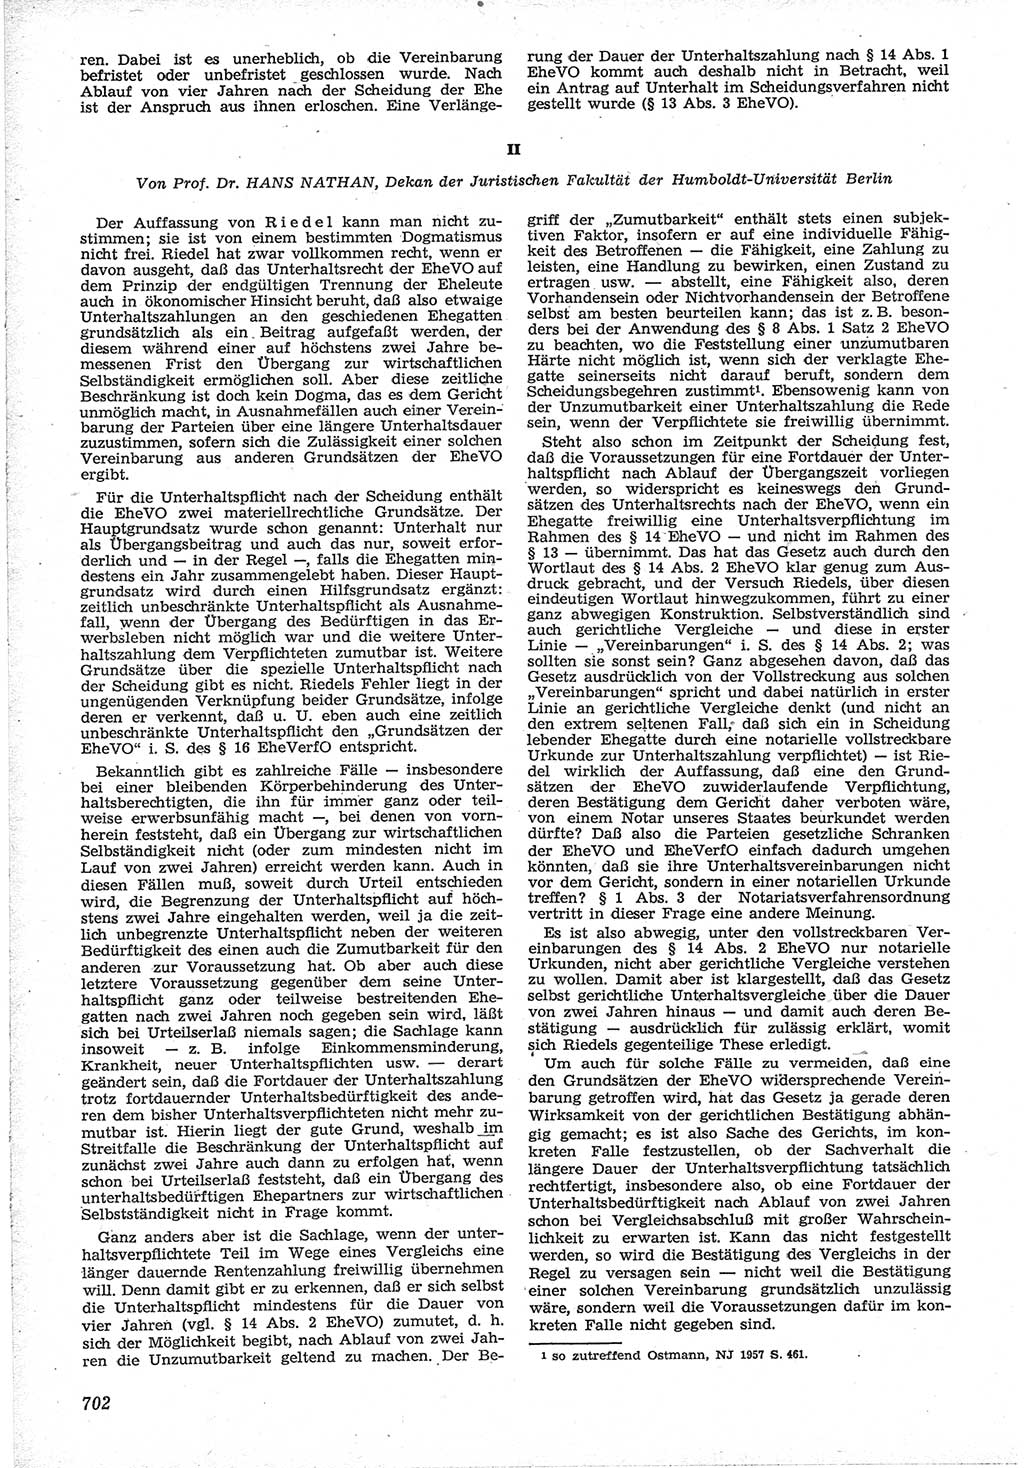 Neue Justiz (NJ), Zeitschrift für Recht und Rechtswissenschaft [Deutsche Demokratische Republik (DDR)], 12. Jahrgang 1958, Seite 702 (NJ DDR 1958, S. 702)